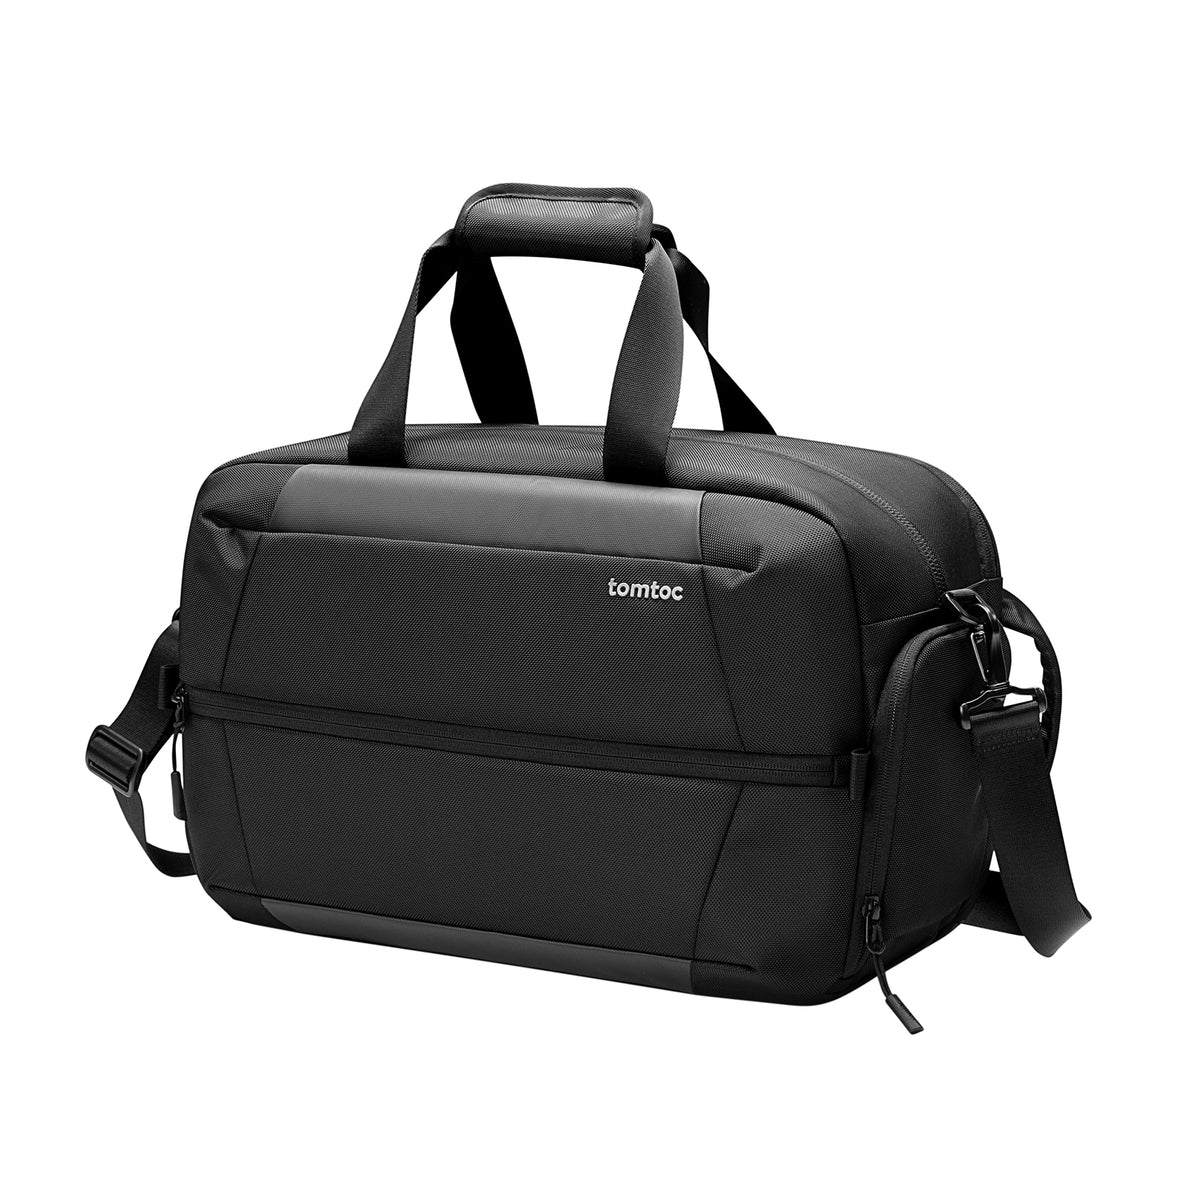 tomtoc 30L Navigator Duffel Bag / Travel Bag / Waterproof Multifunction Bag - Black